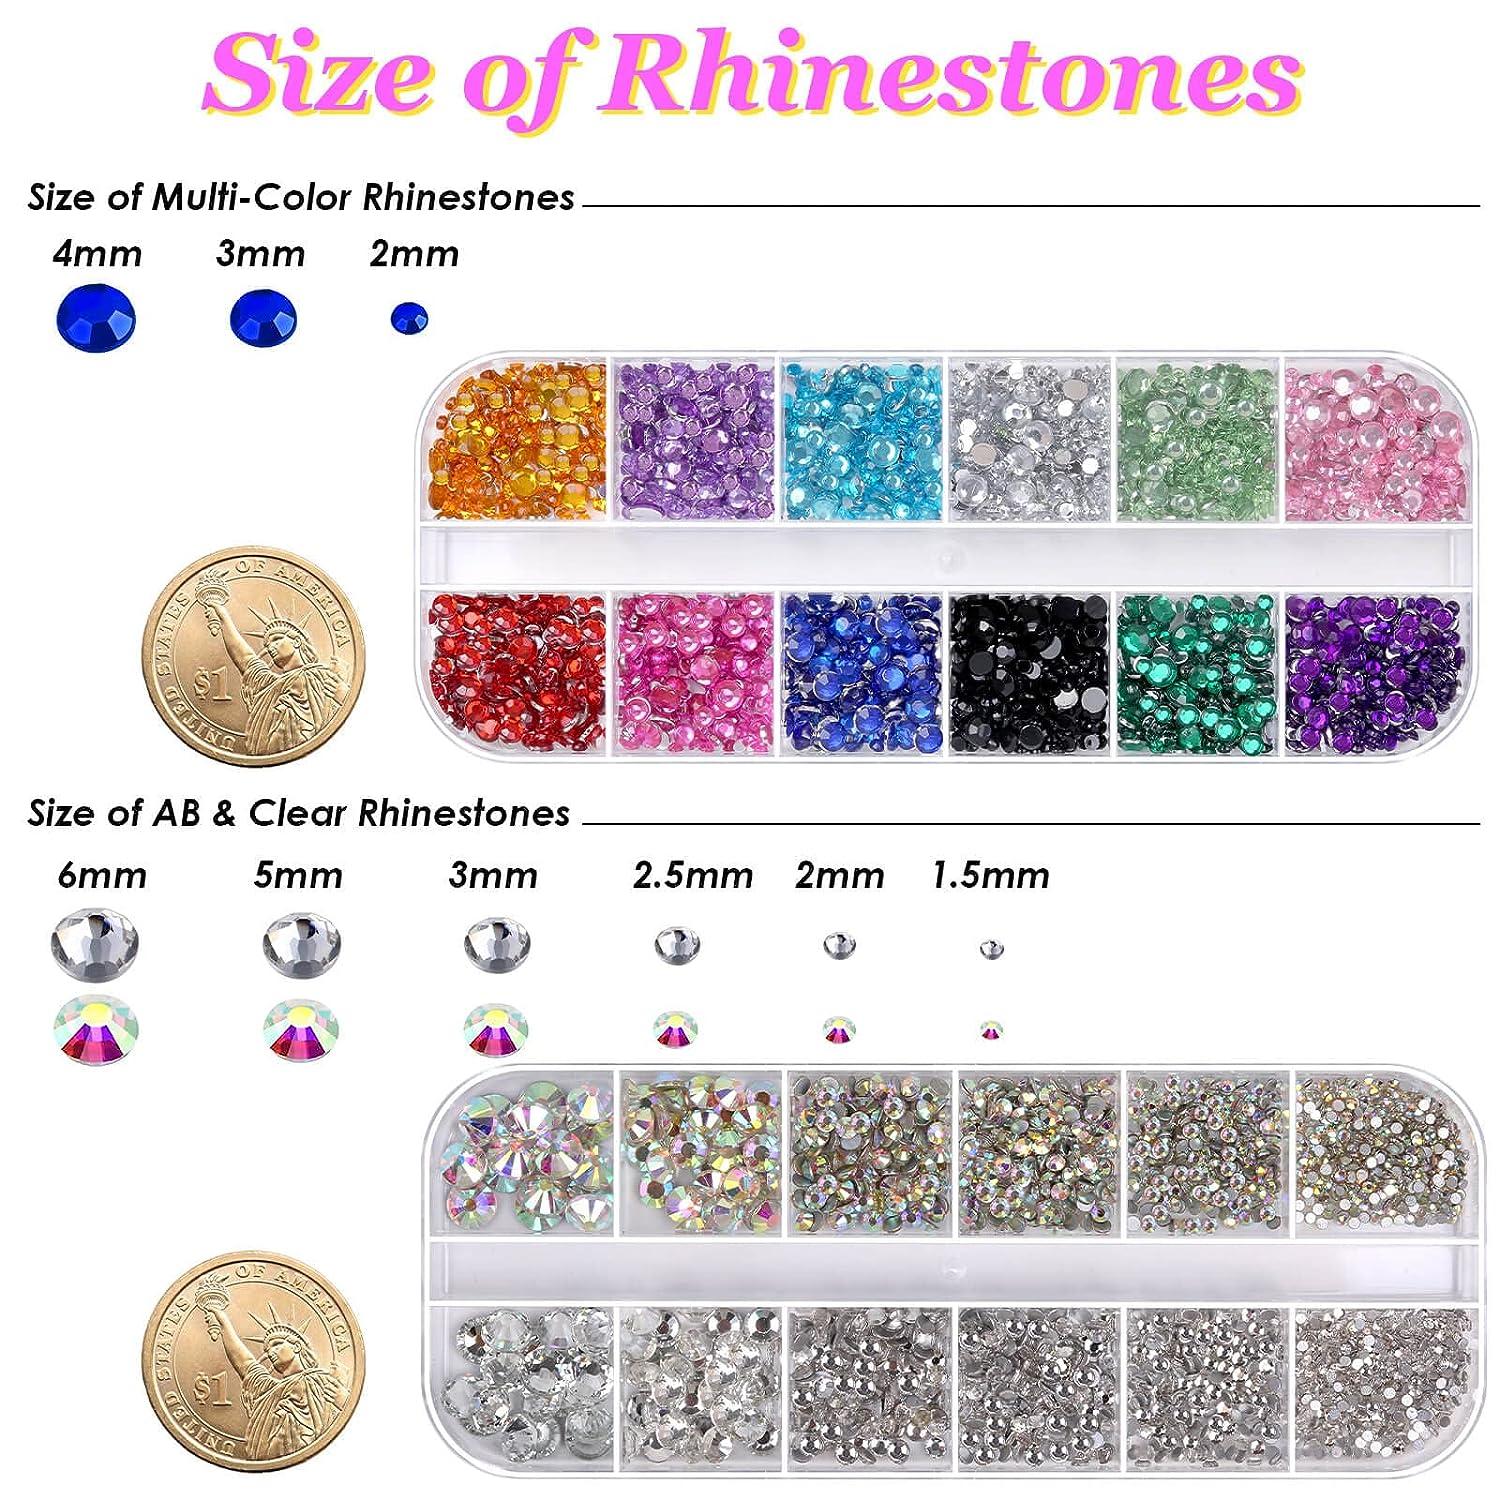  Rinstonestone for Nails, 6 Boxes Nail Art Glitter